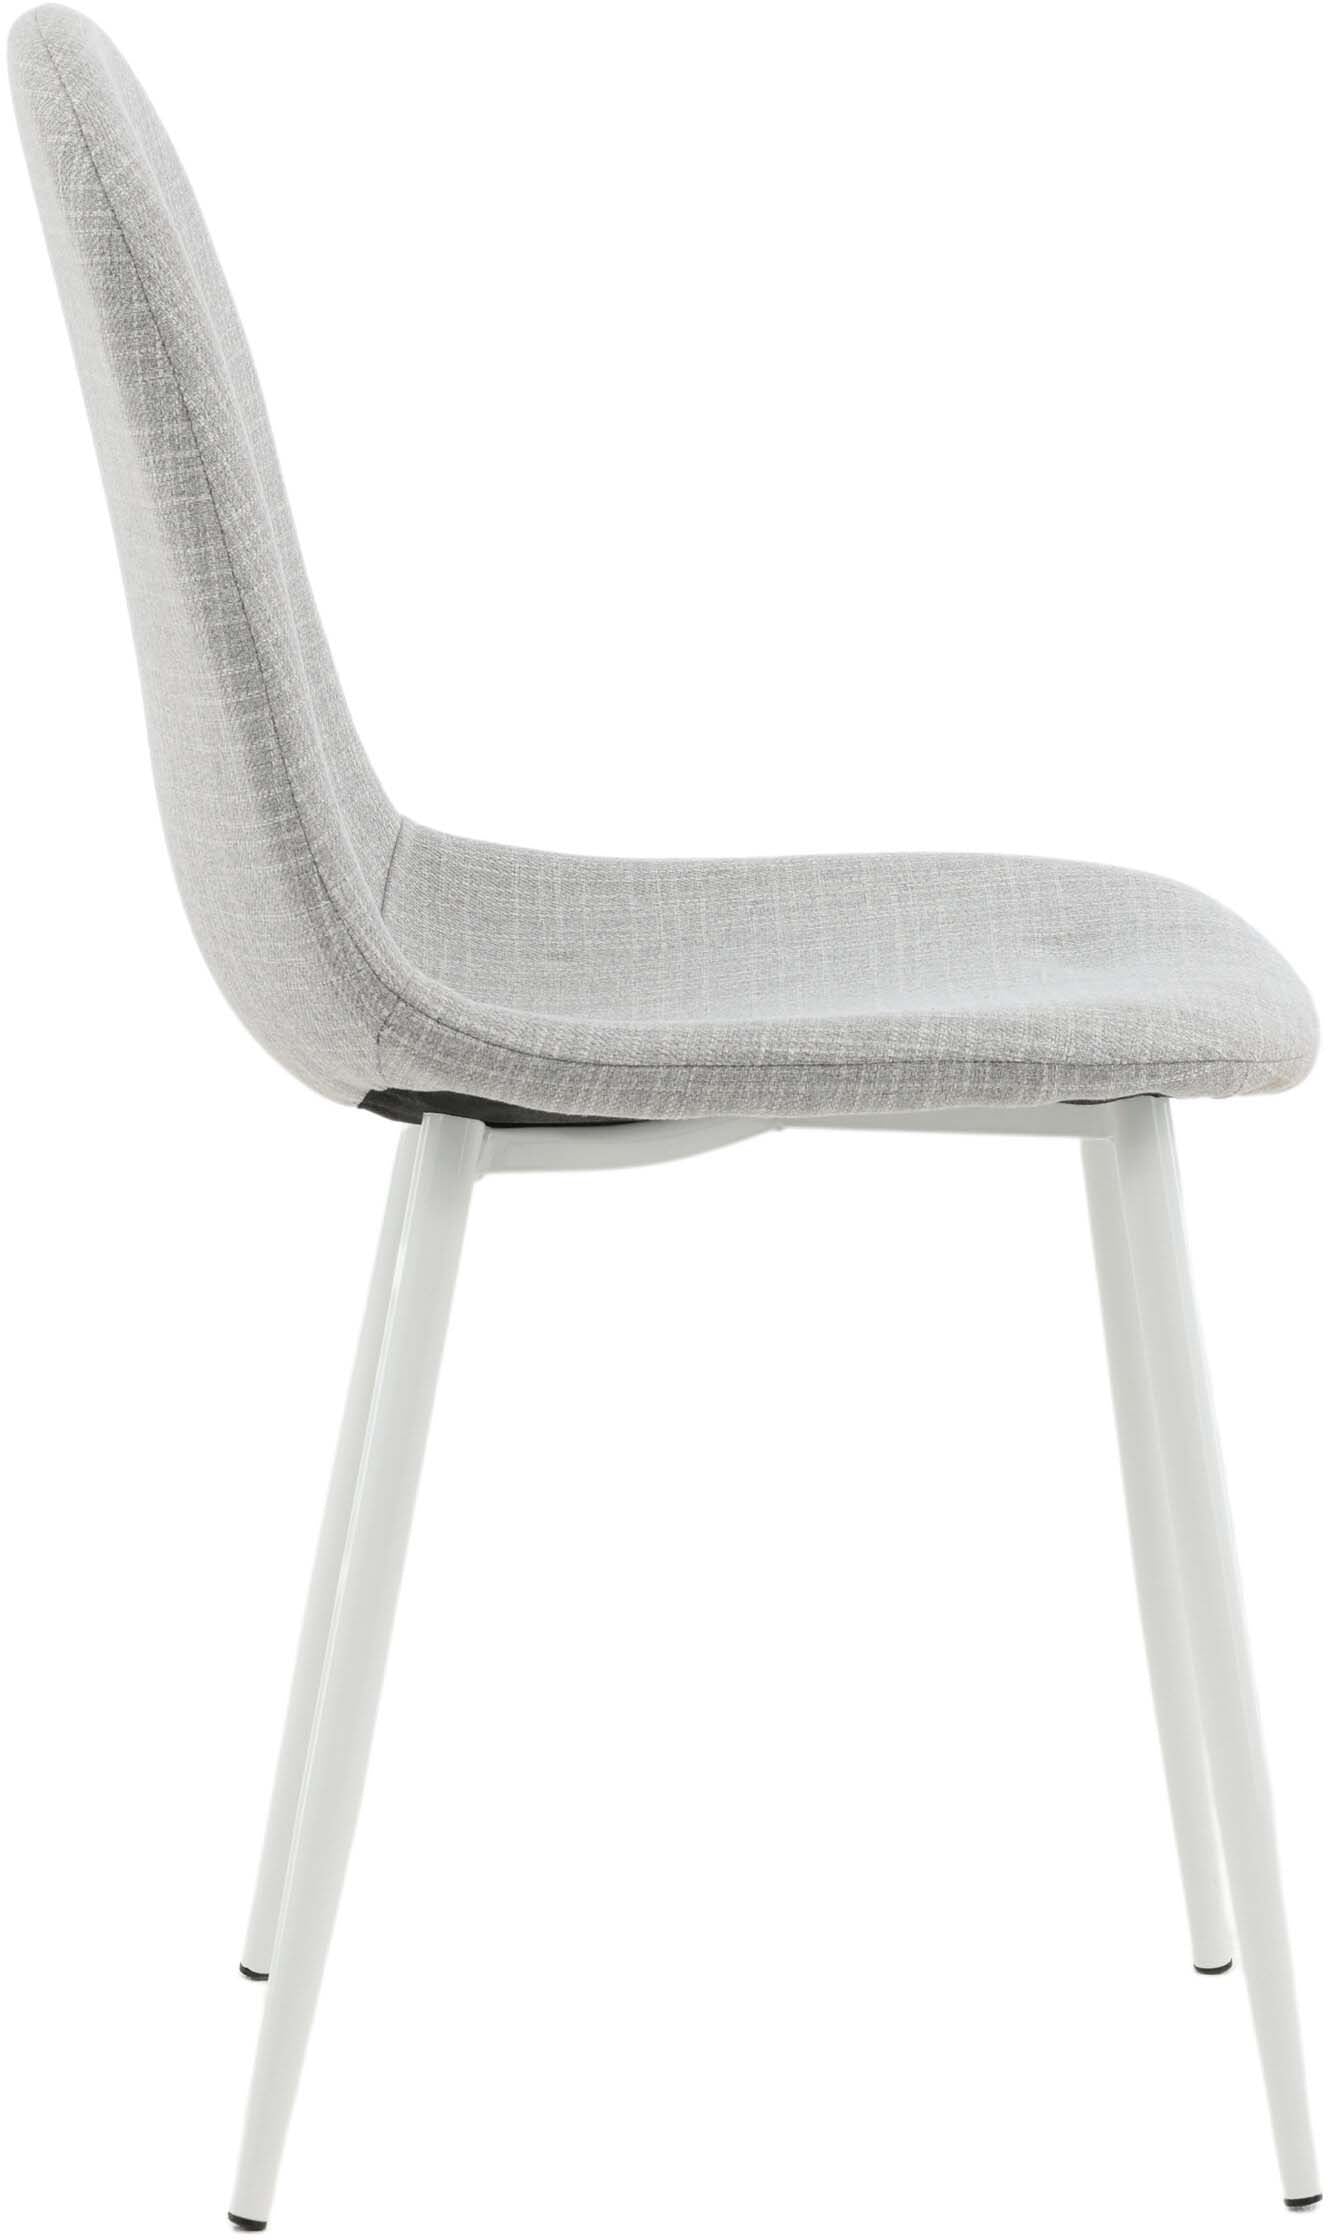 Polar Stuhl in Grau/Weiss präsentiert im Onlineshop von KAQTU Design AG. Stuhl ist von Venture Home